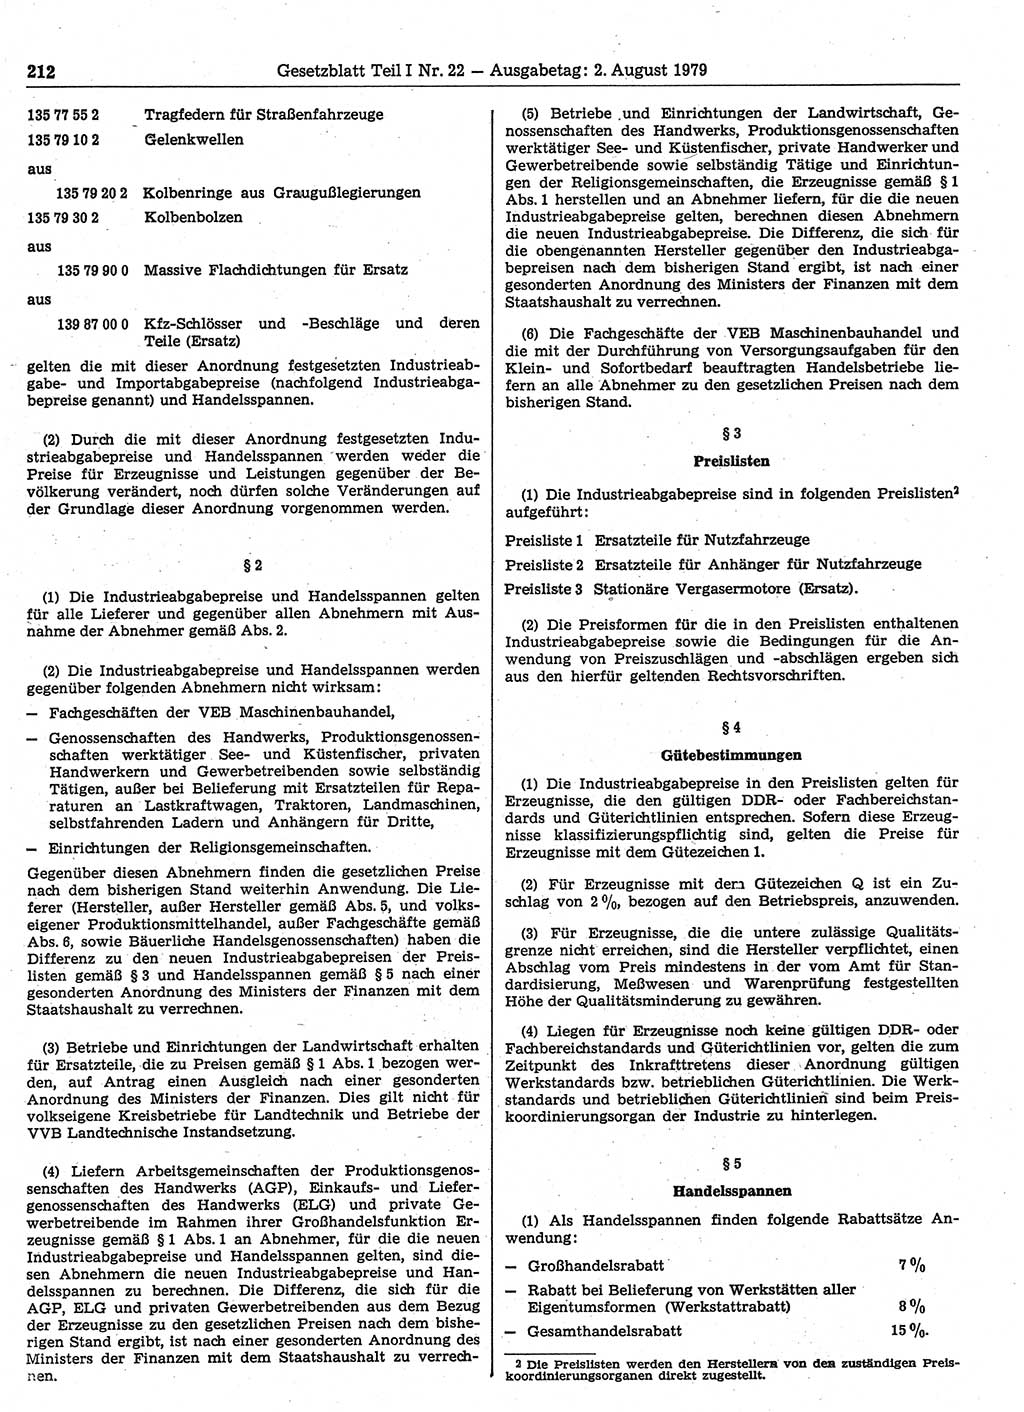 Gesetzblatt (GBl.) der Deutschen Demokratischen Republik (DDR) Teil Ⅰ 1979, Seite 212 (GBl. DDR Ⅰ 1979, S. 212)